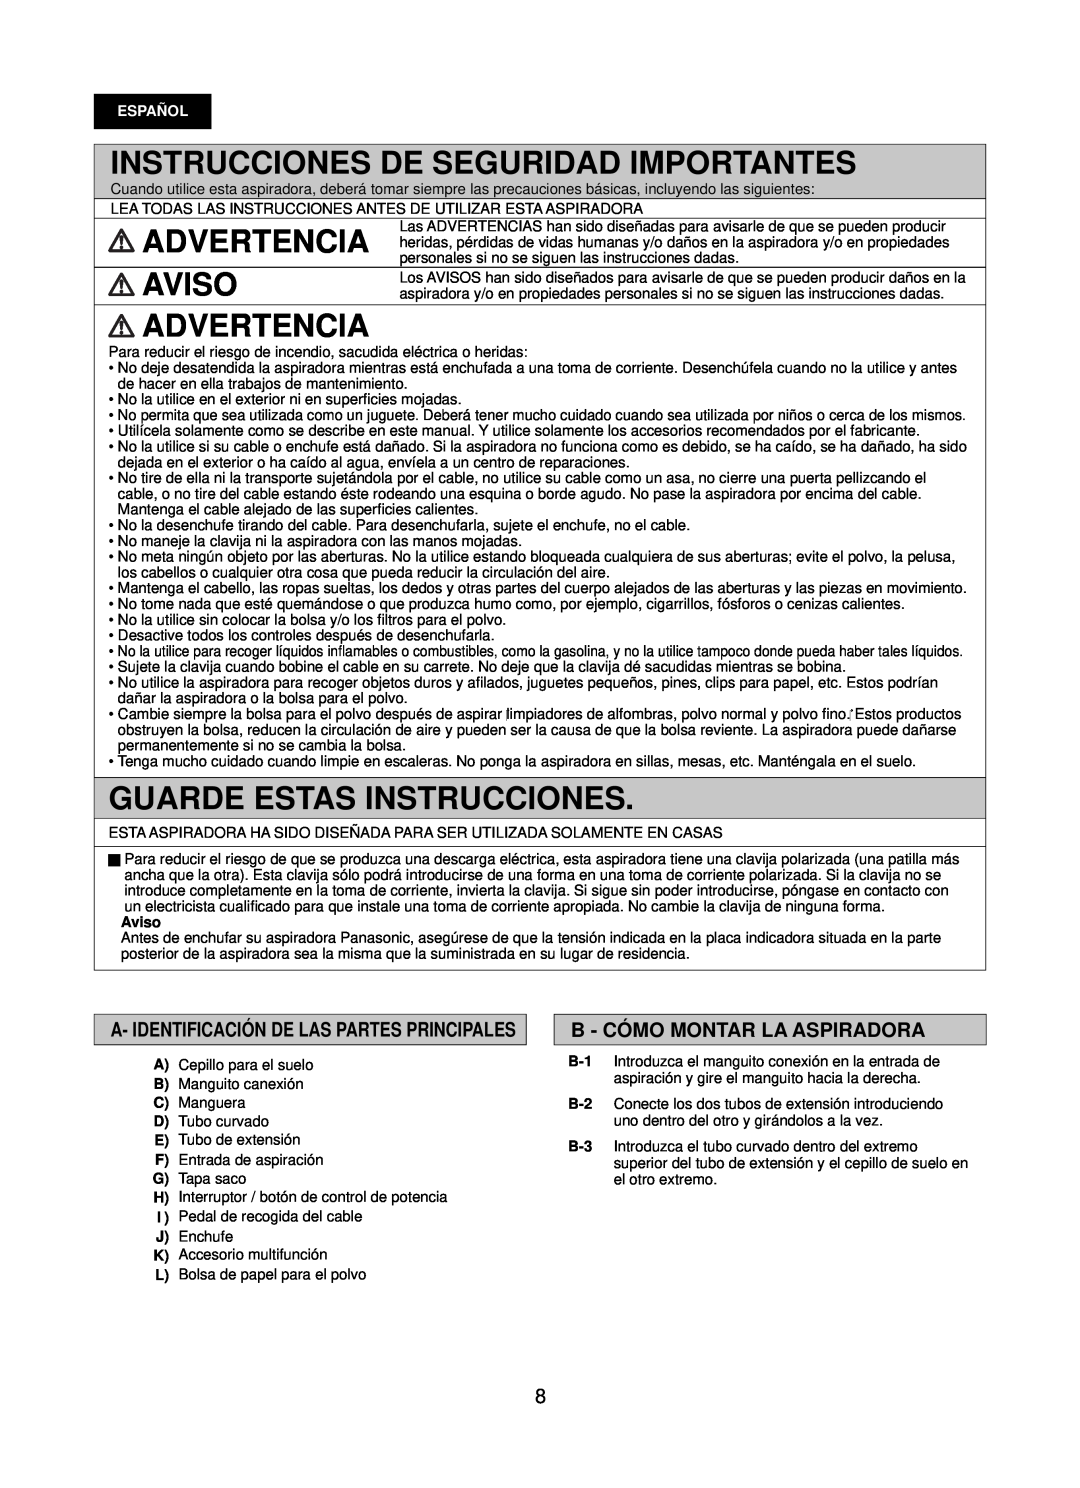 Panasonic Mccg381 Instrucciones De Seguridad Importantes, Advertencia, Aviso, Guarde Estas Instrucciones, Español 